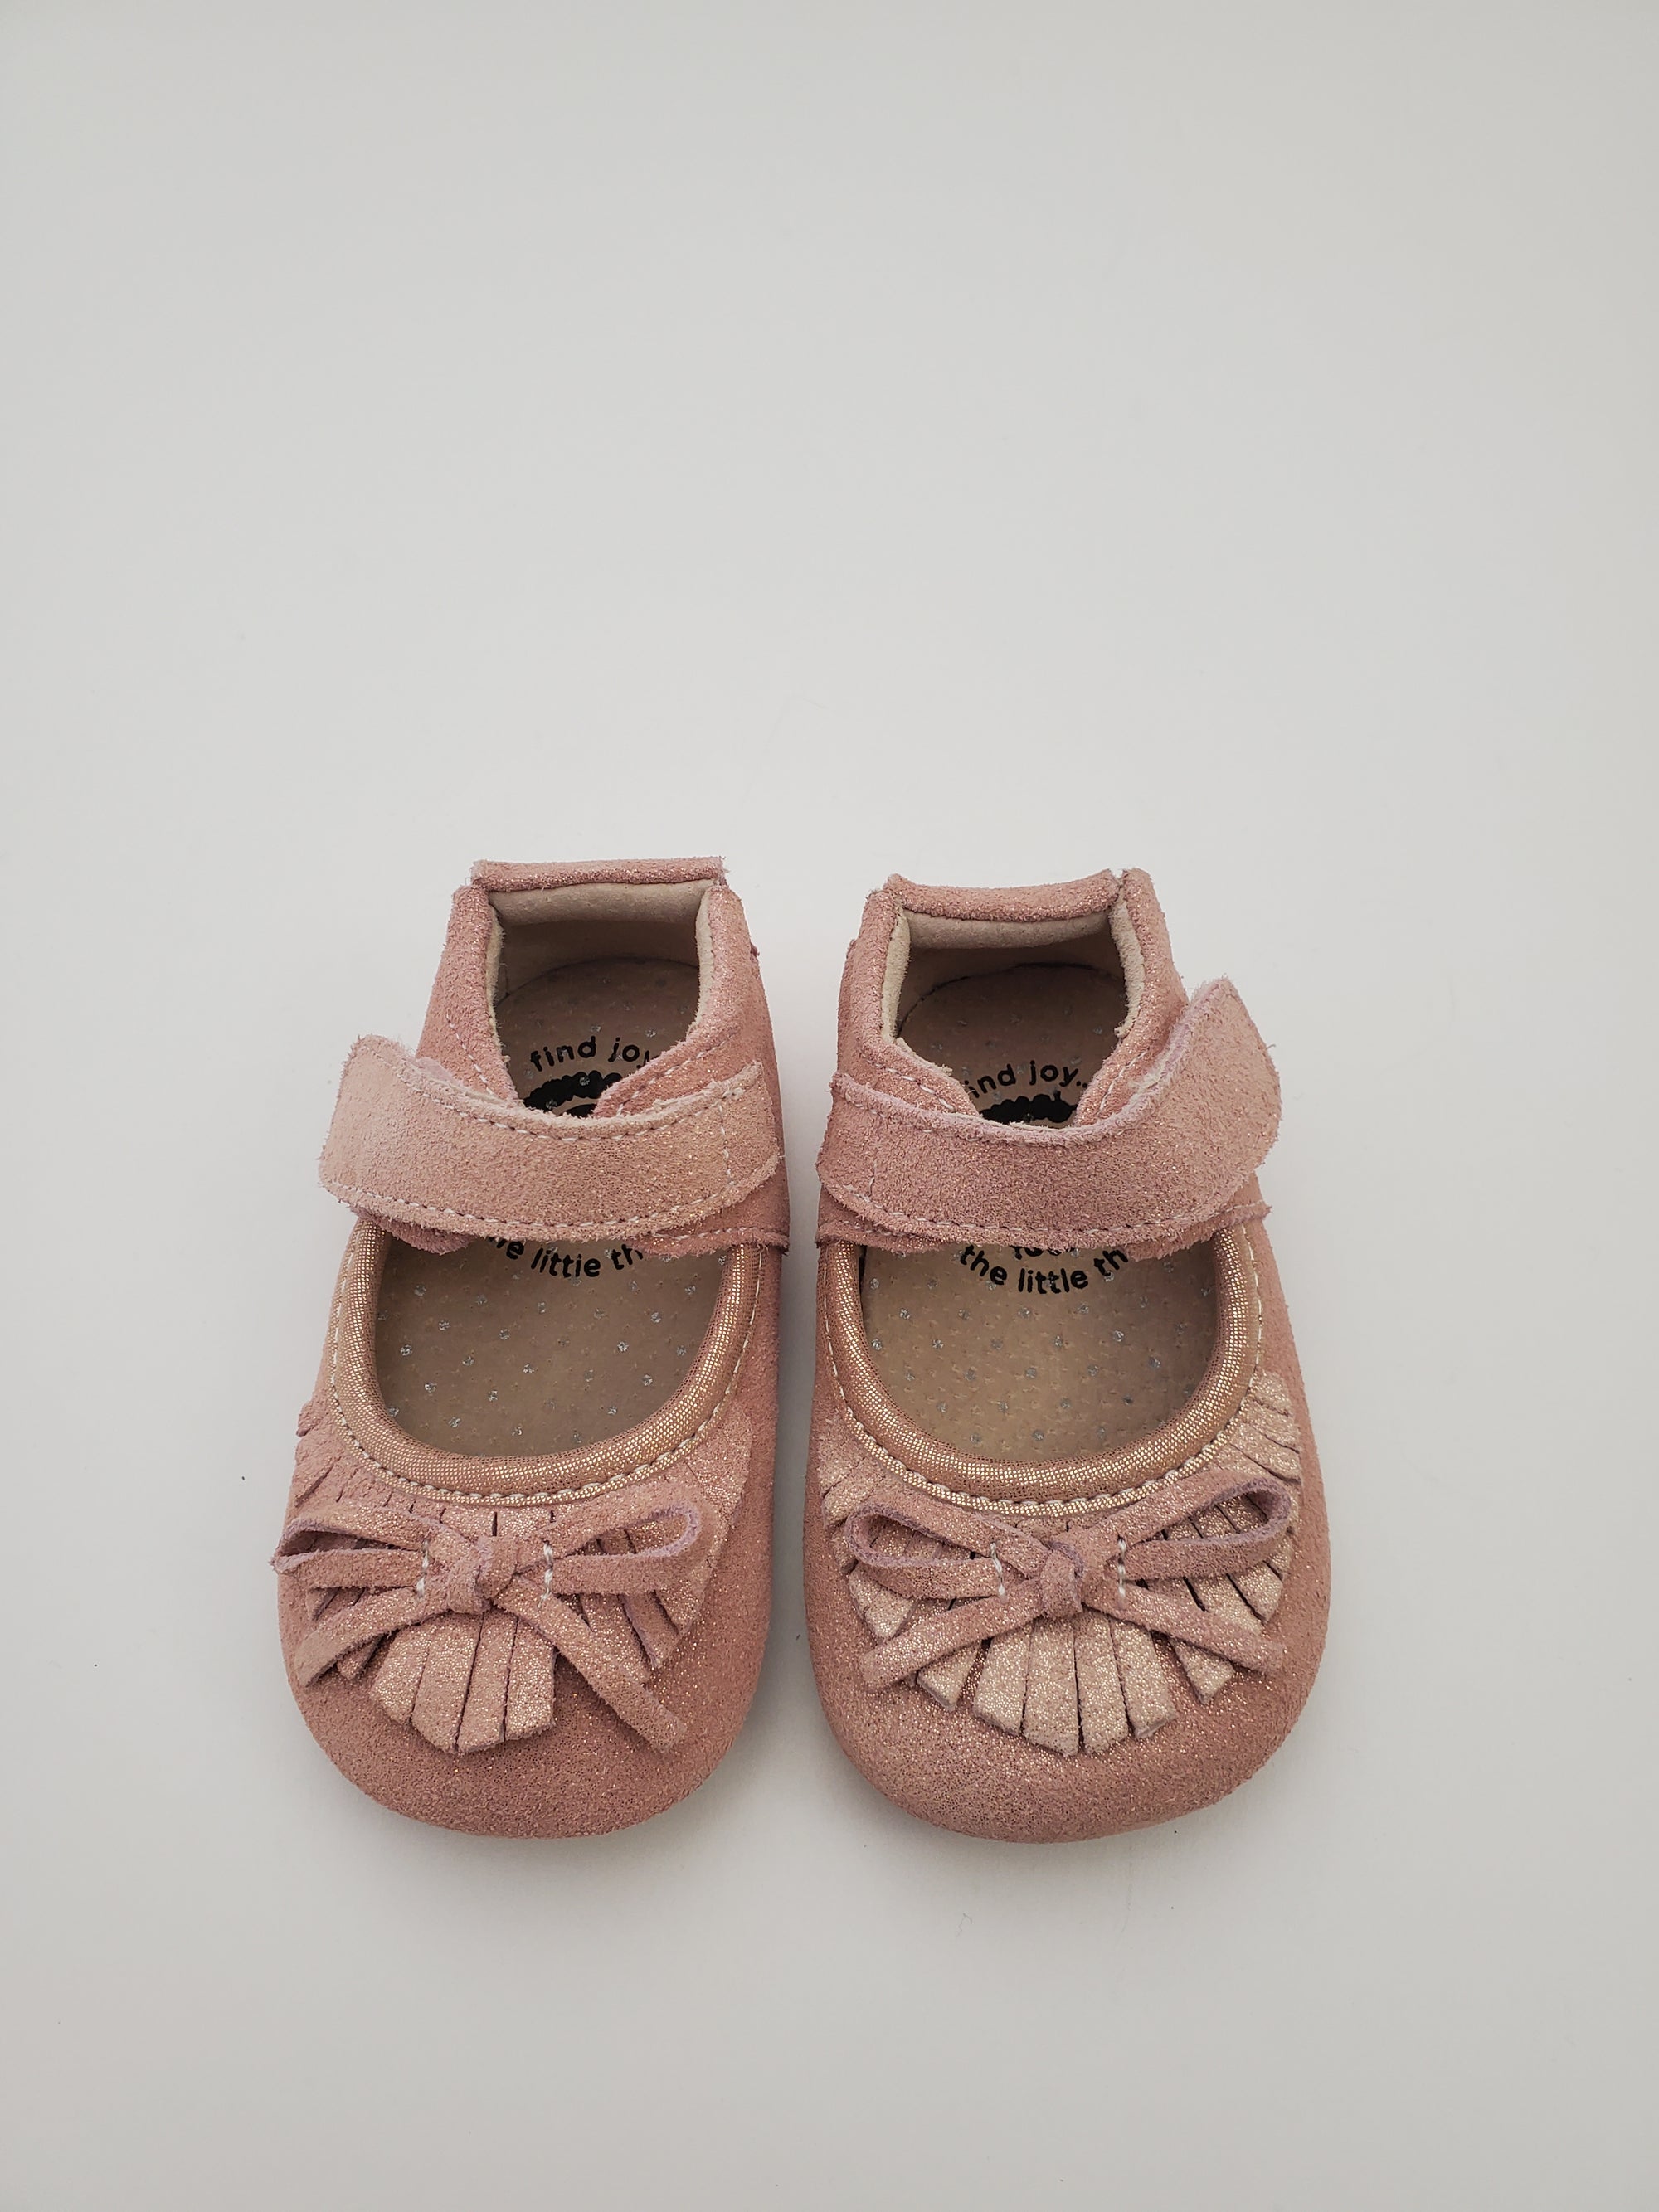 Livie & Luca Willow Crib Shoe in Desert Rose Shimmer (final sale)